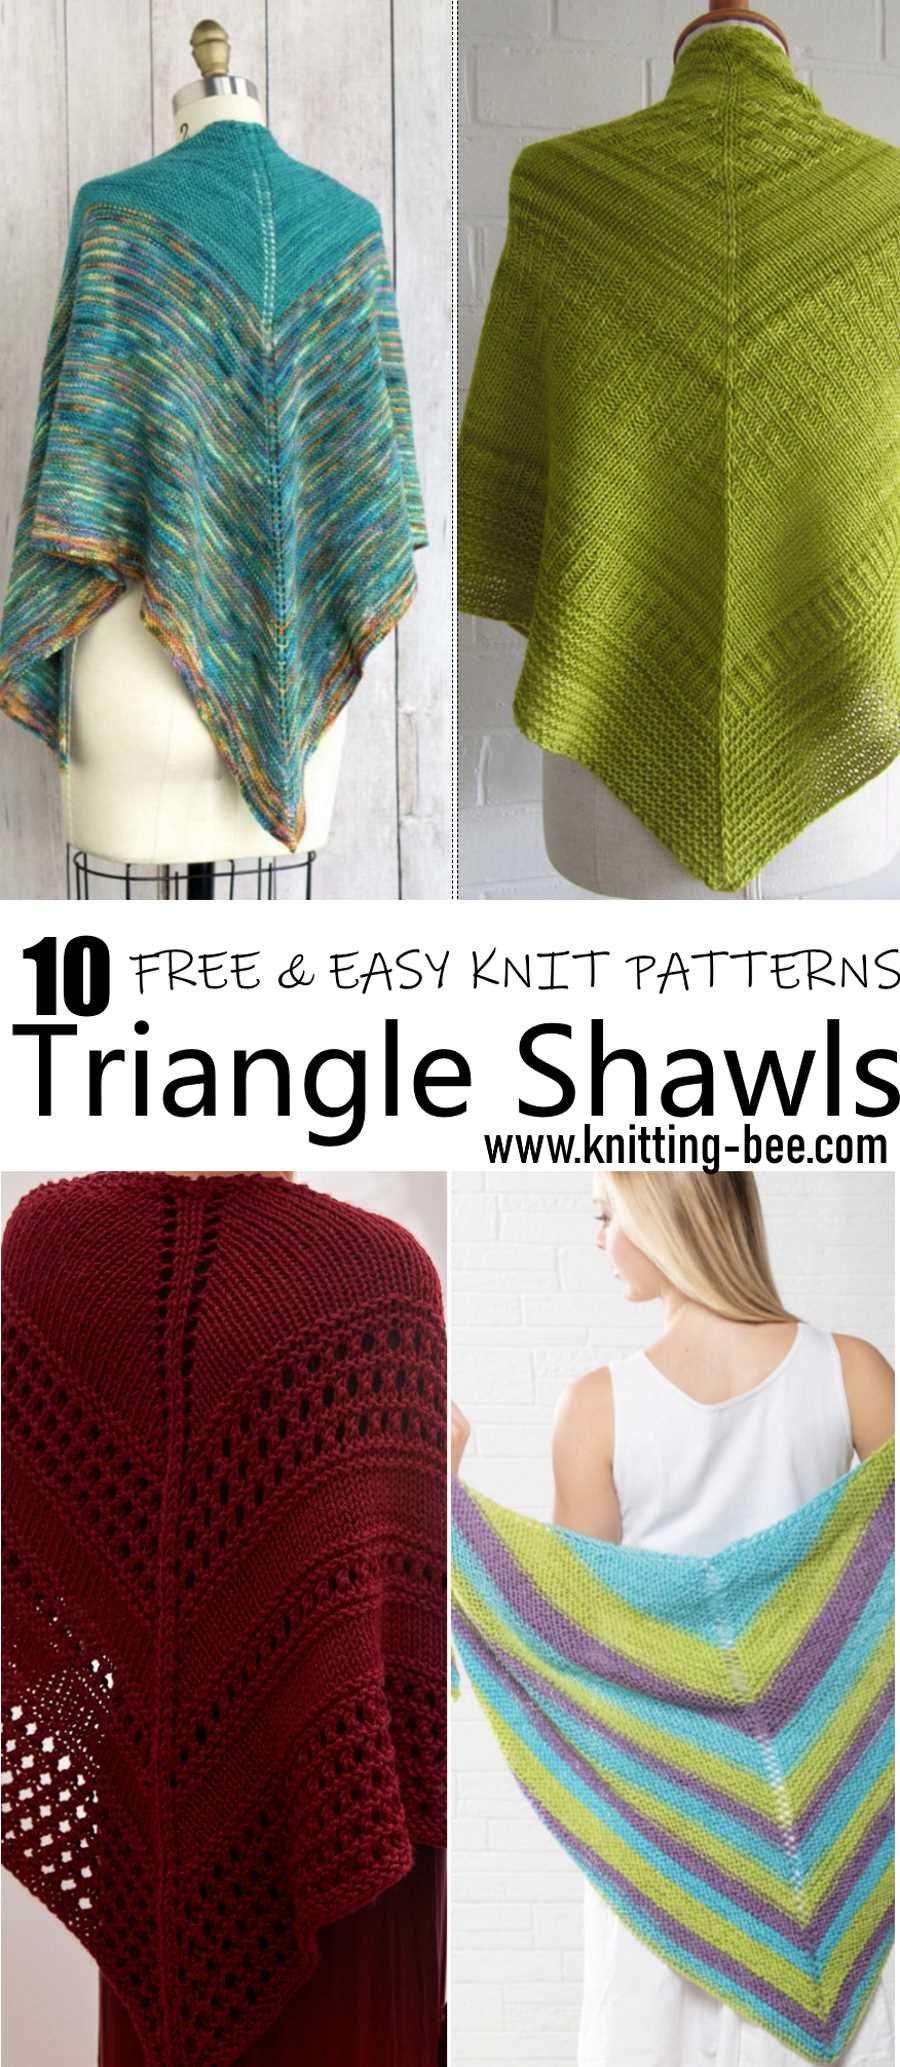 Knit Shawl Patterns Free 10 Easy And Free Triangle Shawl Knitting Pattern